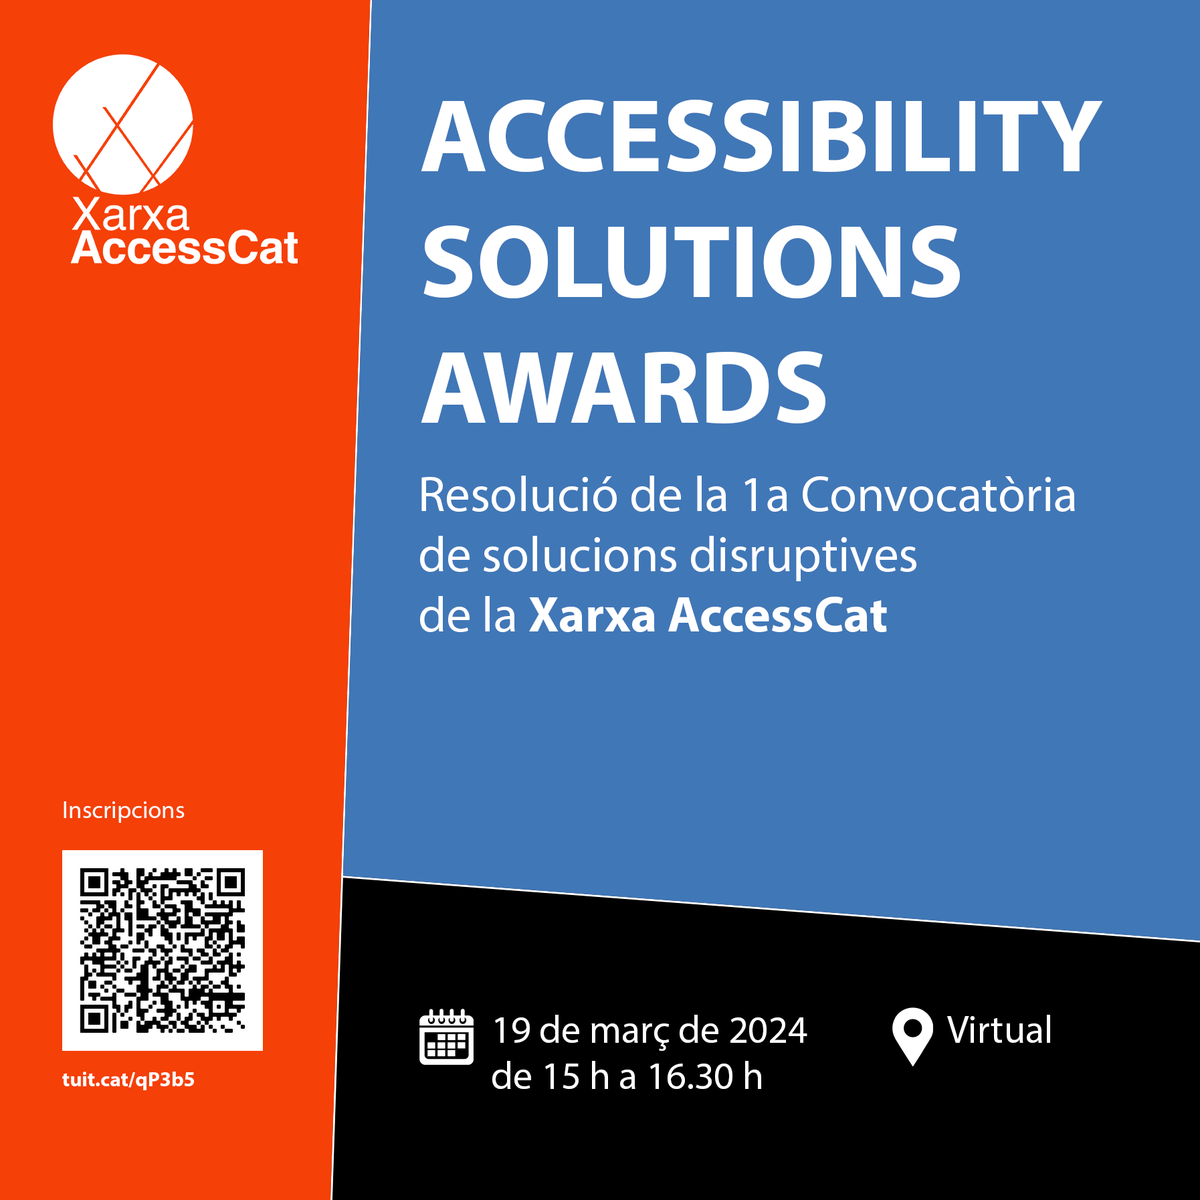 Vine a l'Accessibility Solutions Awards de la @XarxaAccessCat, una jornada dedicada a serveis, tecnologies i coneixements innovadors en matèria d'accessibilitat. 🗓️ Reserva't la data: 19 de març Inscripcions 🔗 forms.office.com/pages/response…